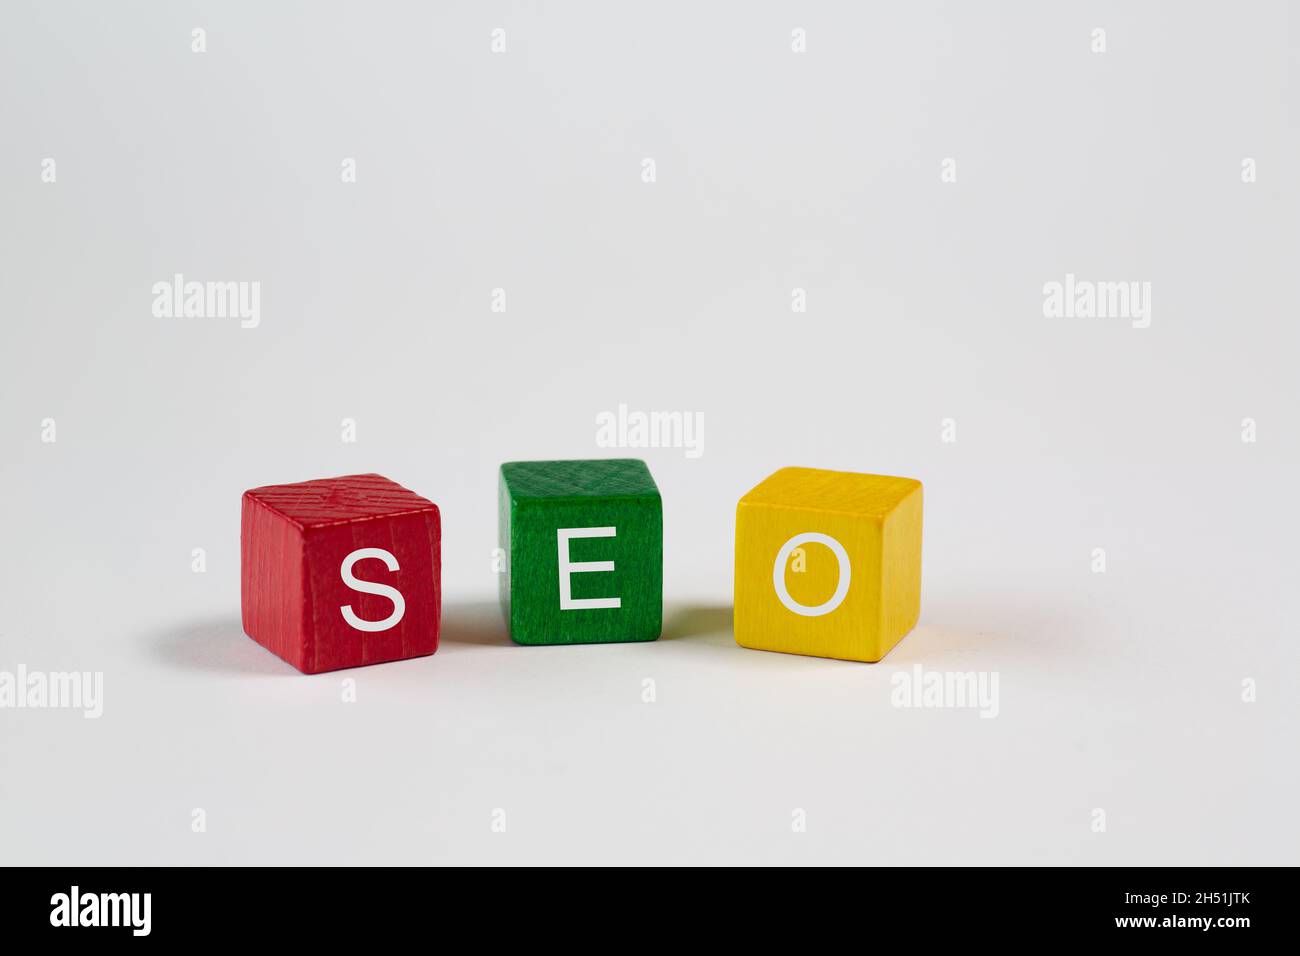 L'abréviation SEO - Search Engine Optimization - est notée contre un fond blanc sur un bloc rouge, vert et jaune avec une lettre chacun et est i Banque D'Images